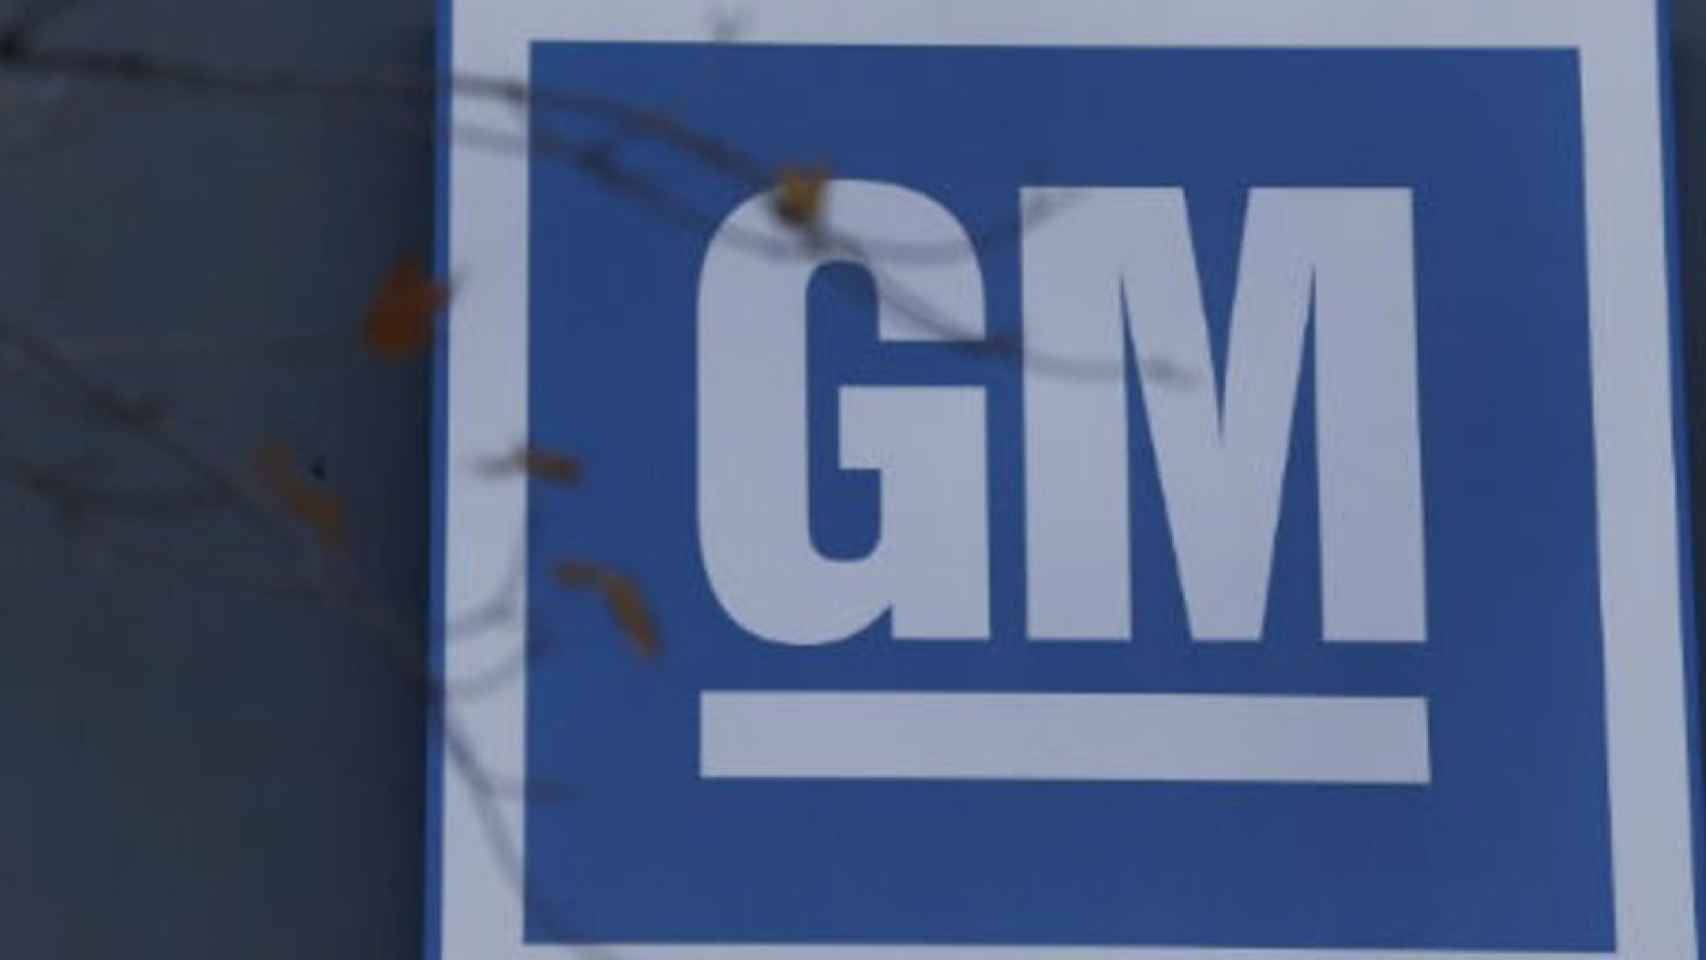 Logo de General Motors.